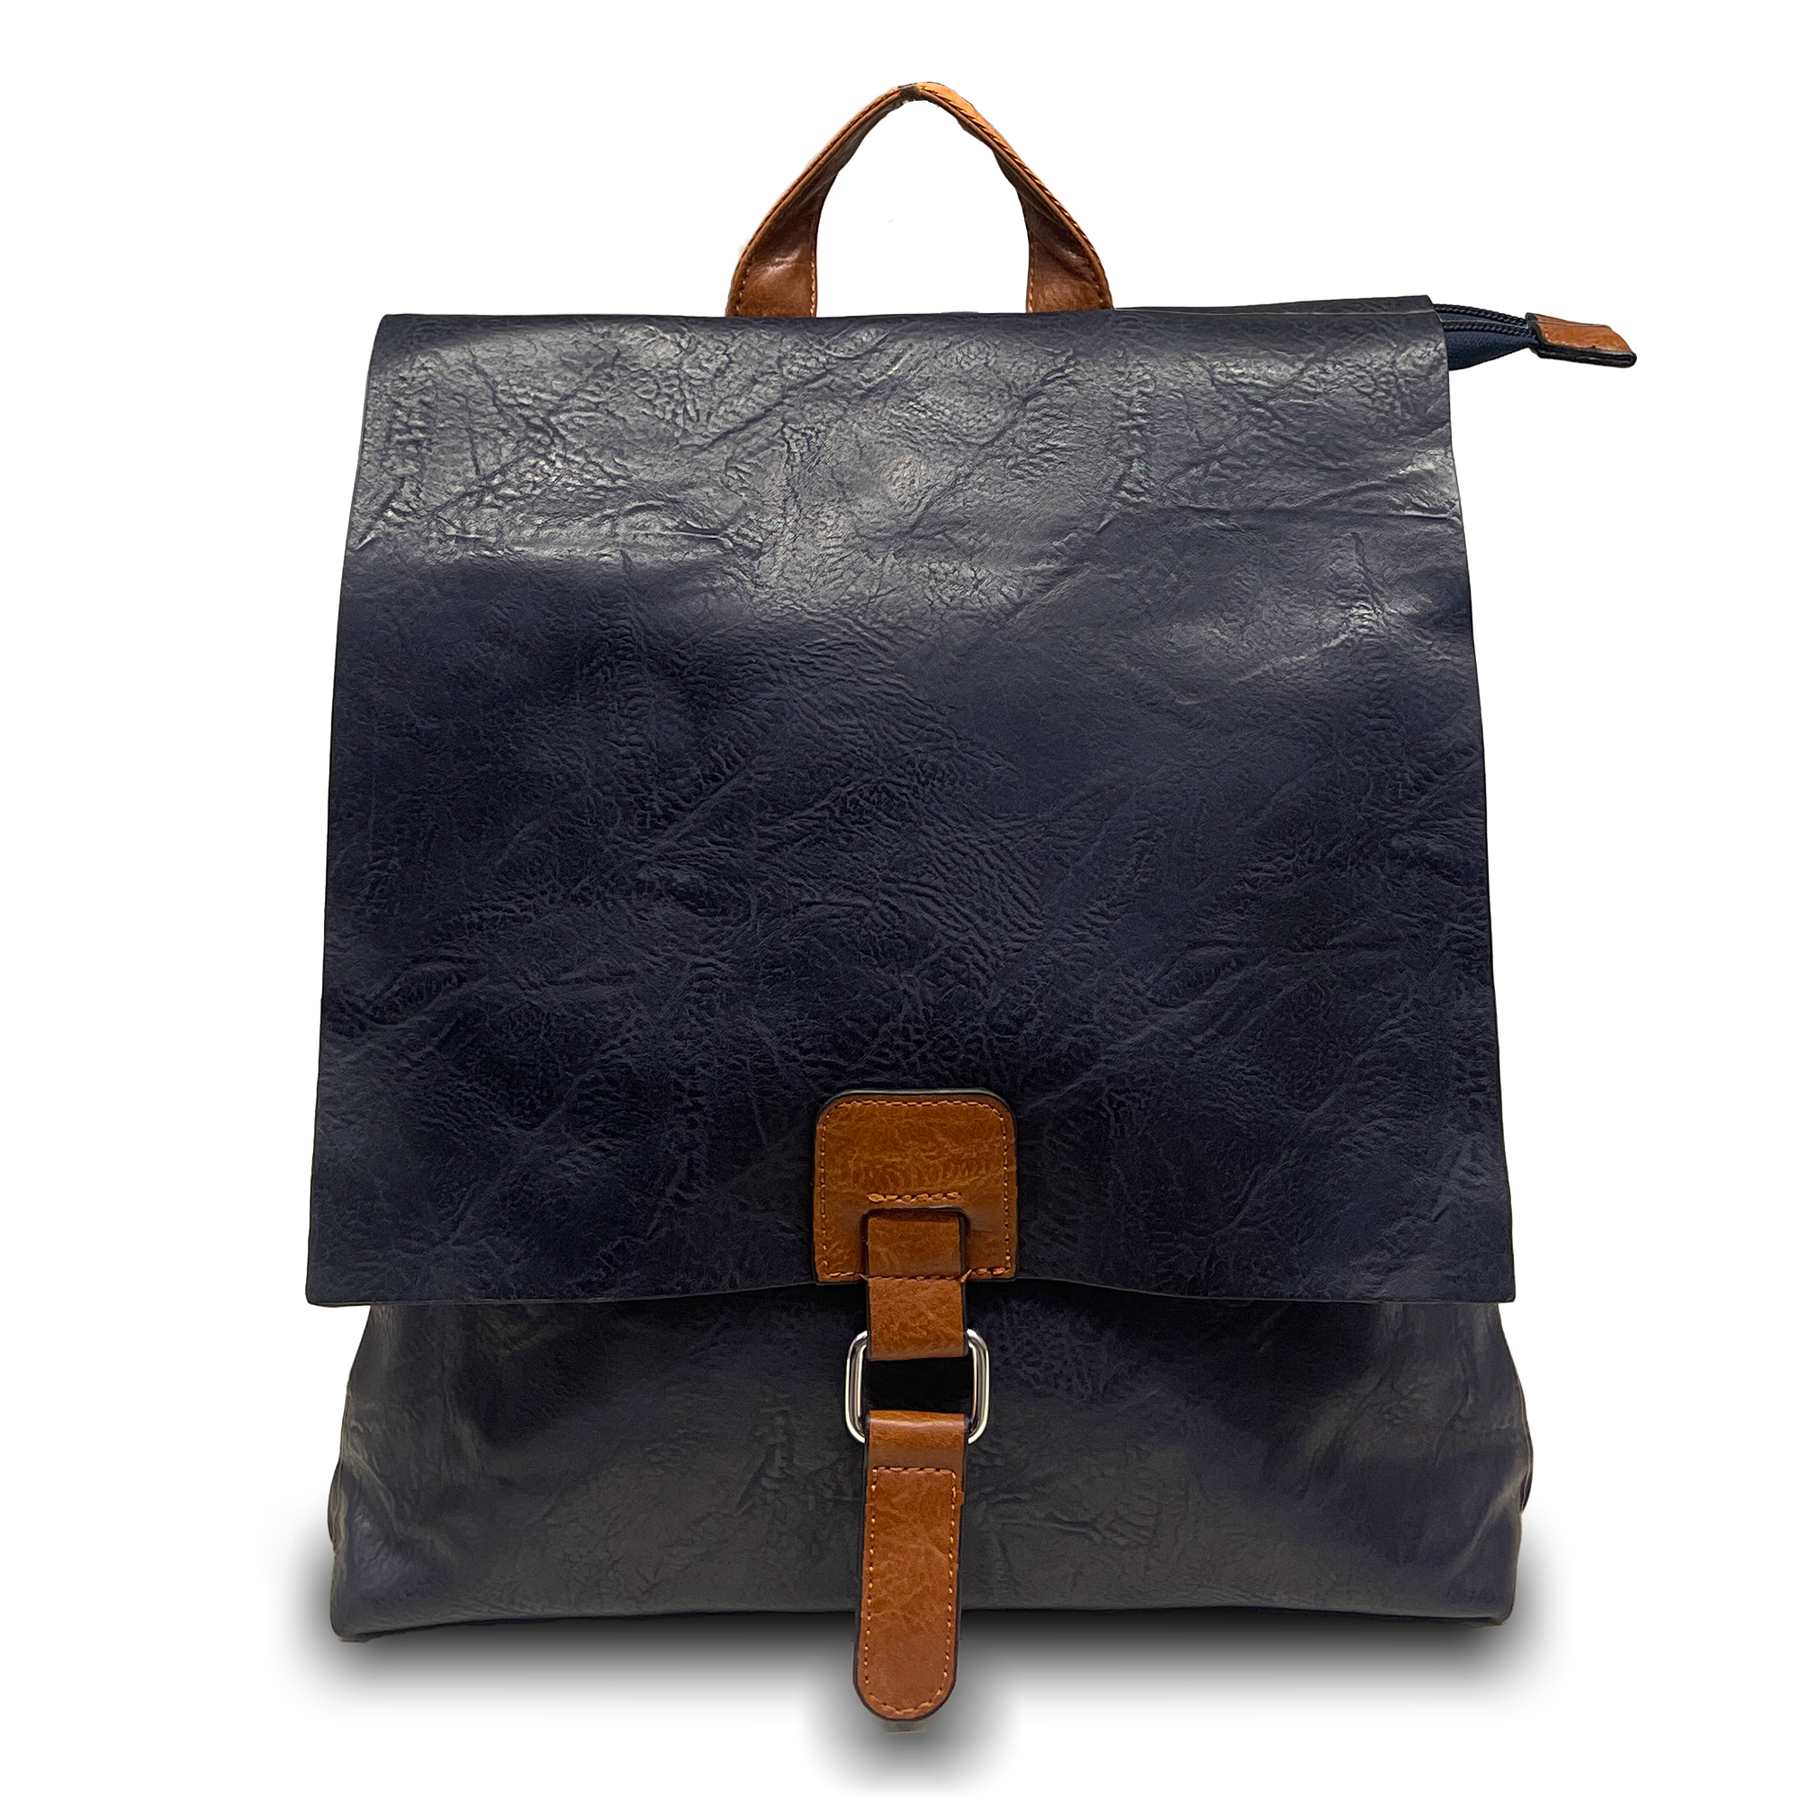 2-in-1-transformierbarer Rucksack: Vintage-Stil, doppelte Tasche mit Schultergurt und Rucksack verwenden